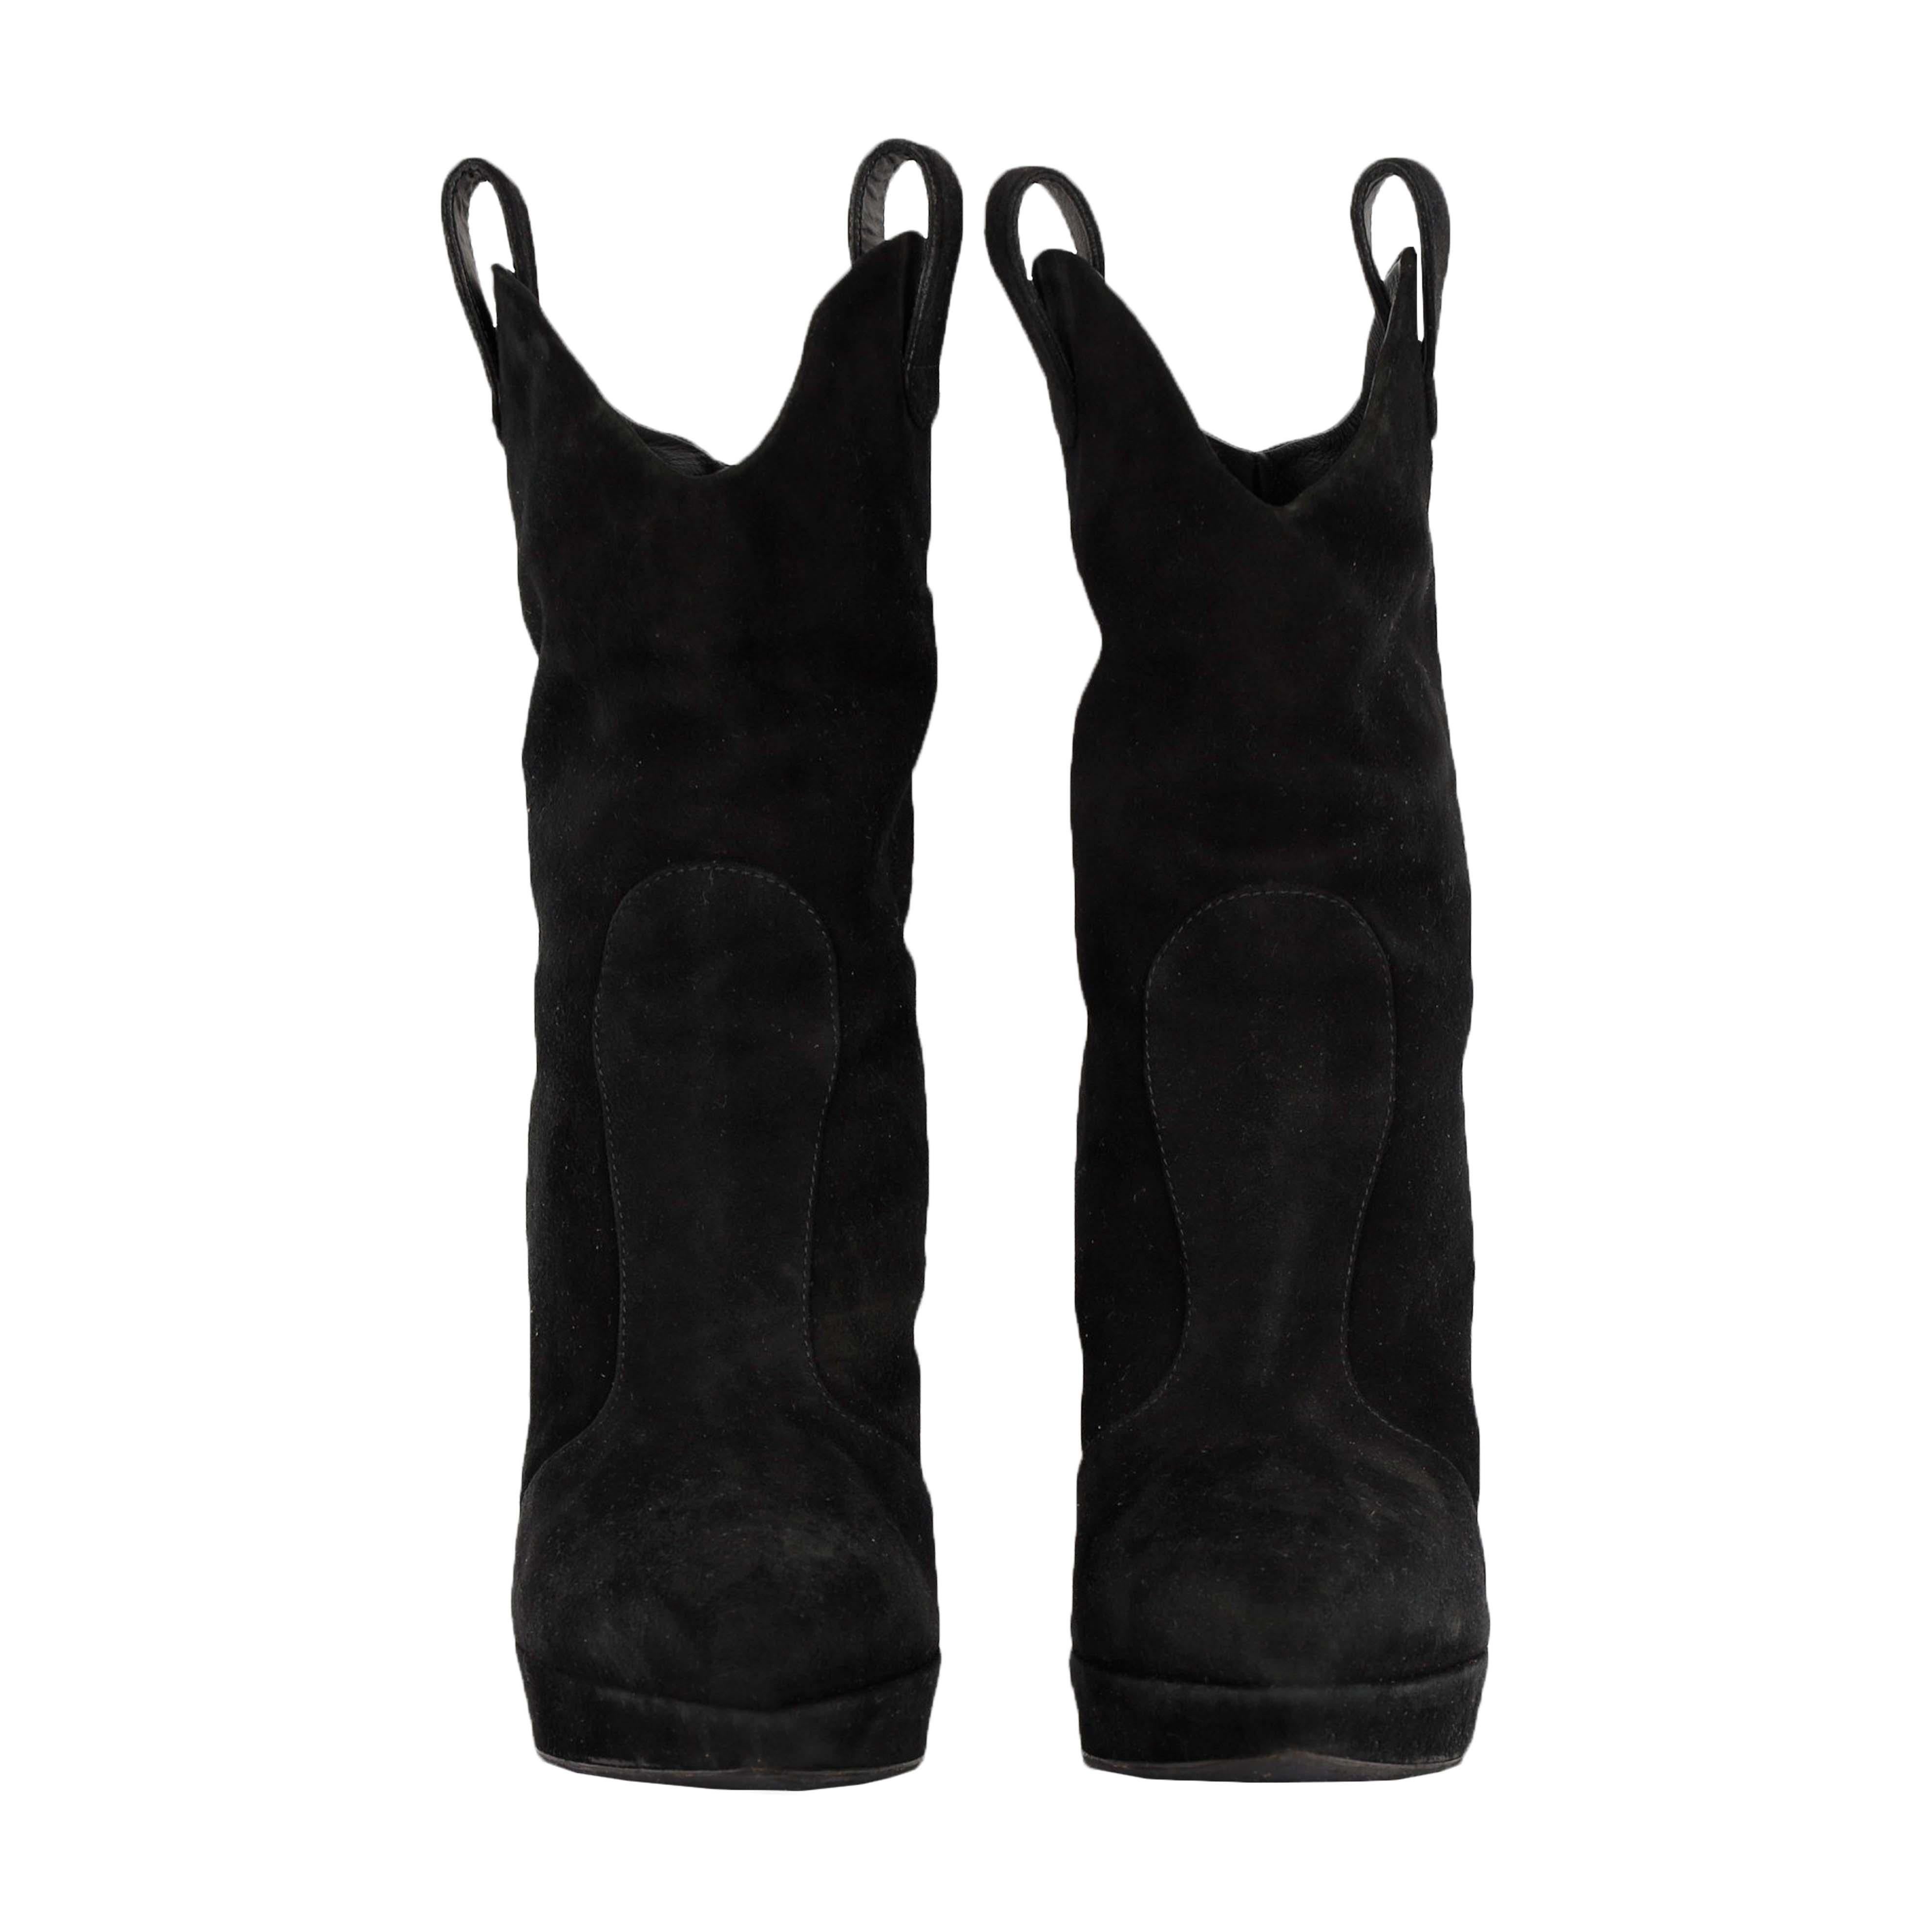 Incarnation de l'élégance raffinée, ces bottes pointues en daim noires Giuseppe Zanotti sont parfaites pour rehausser les tenues les plus simples. Avec des brides de bottes sur le côté qui permettent de s'y glisser facilement, elles peuvent être